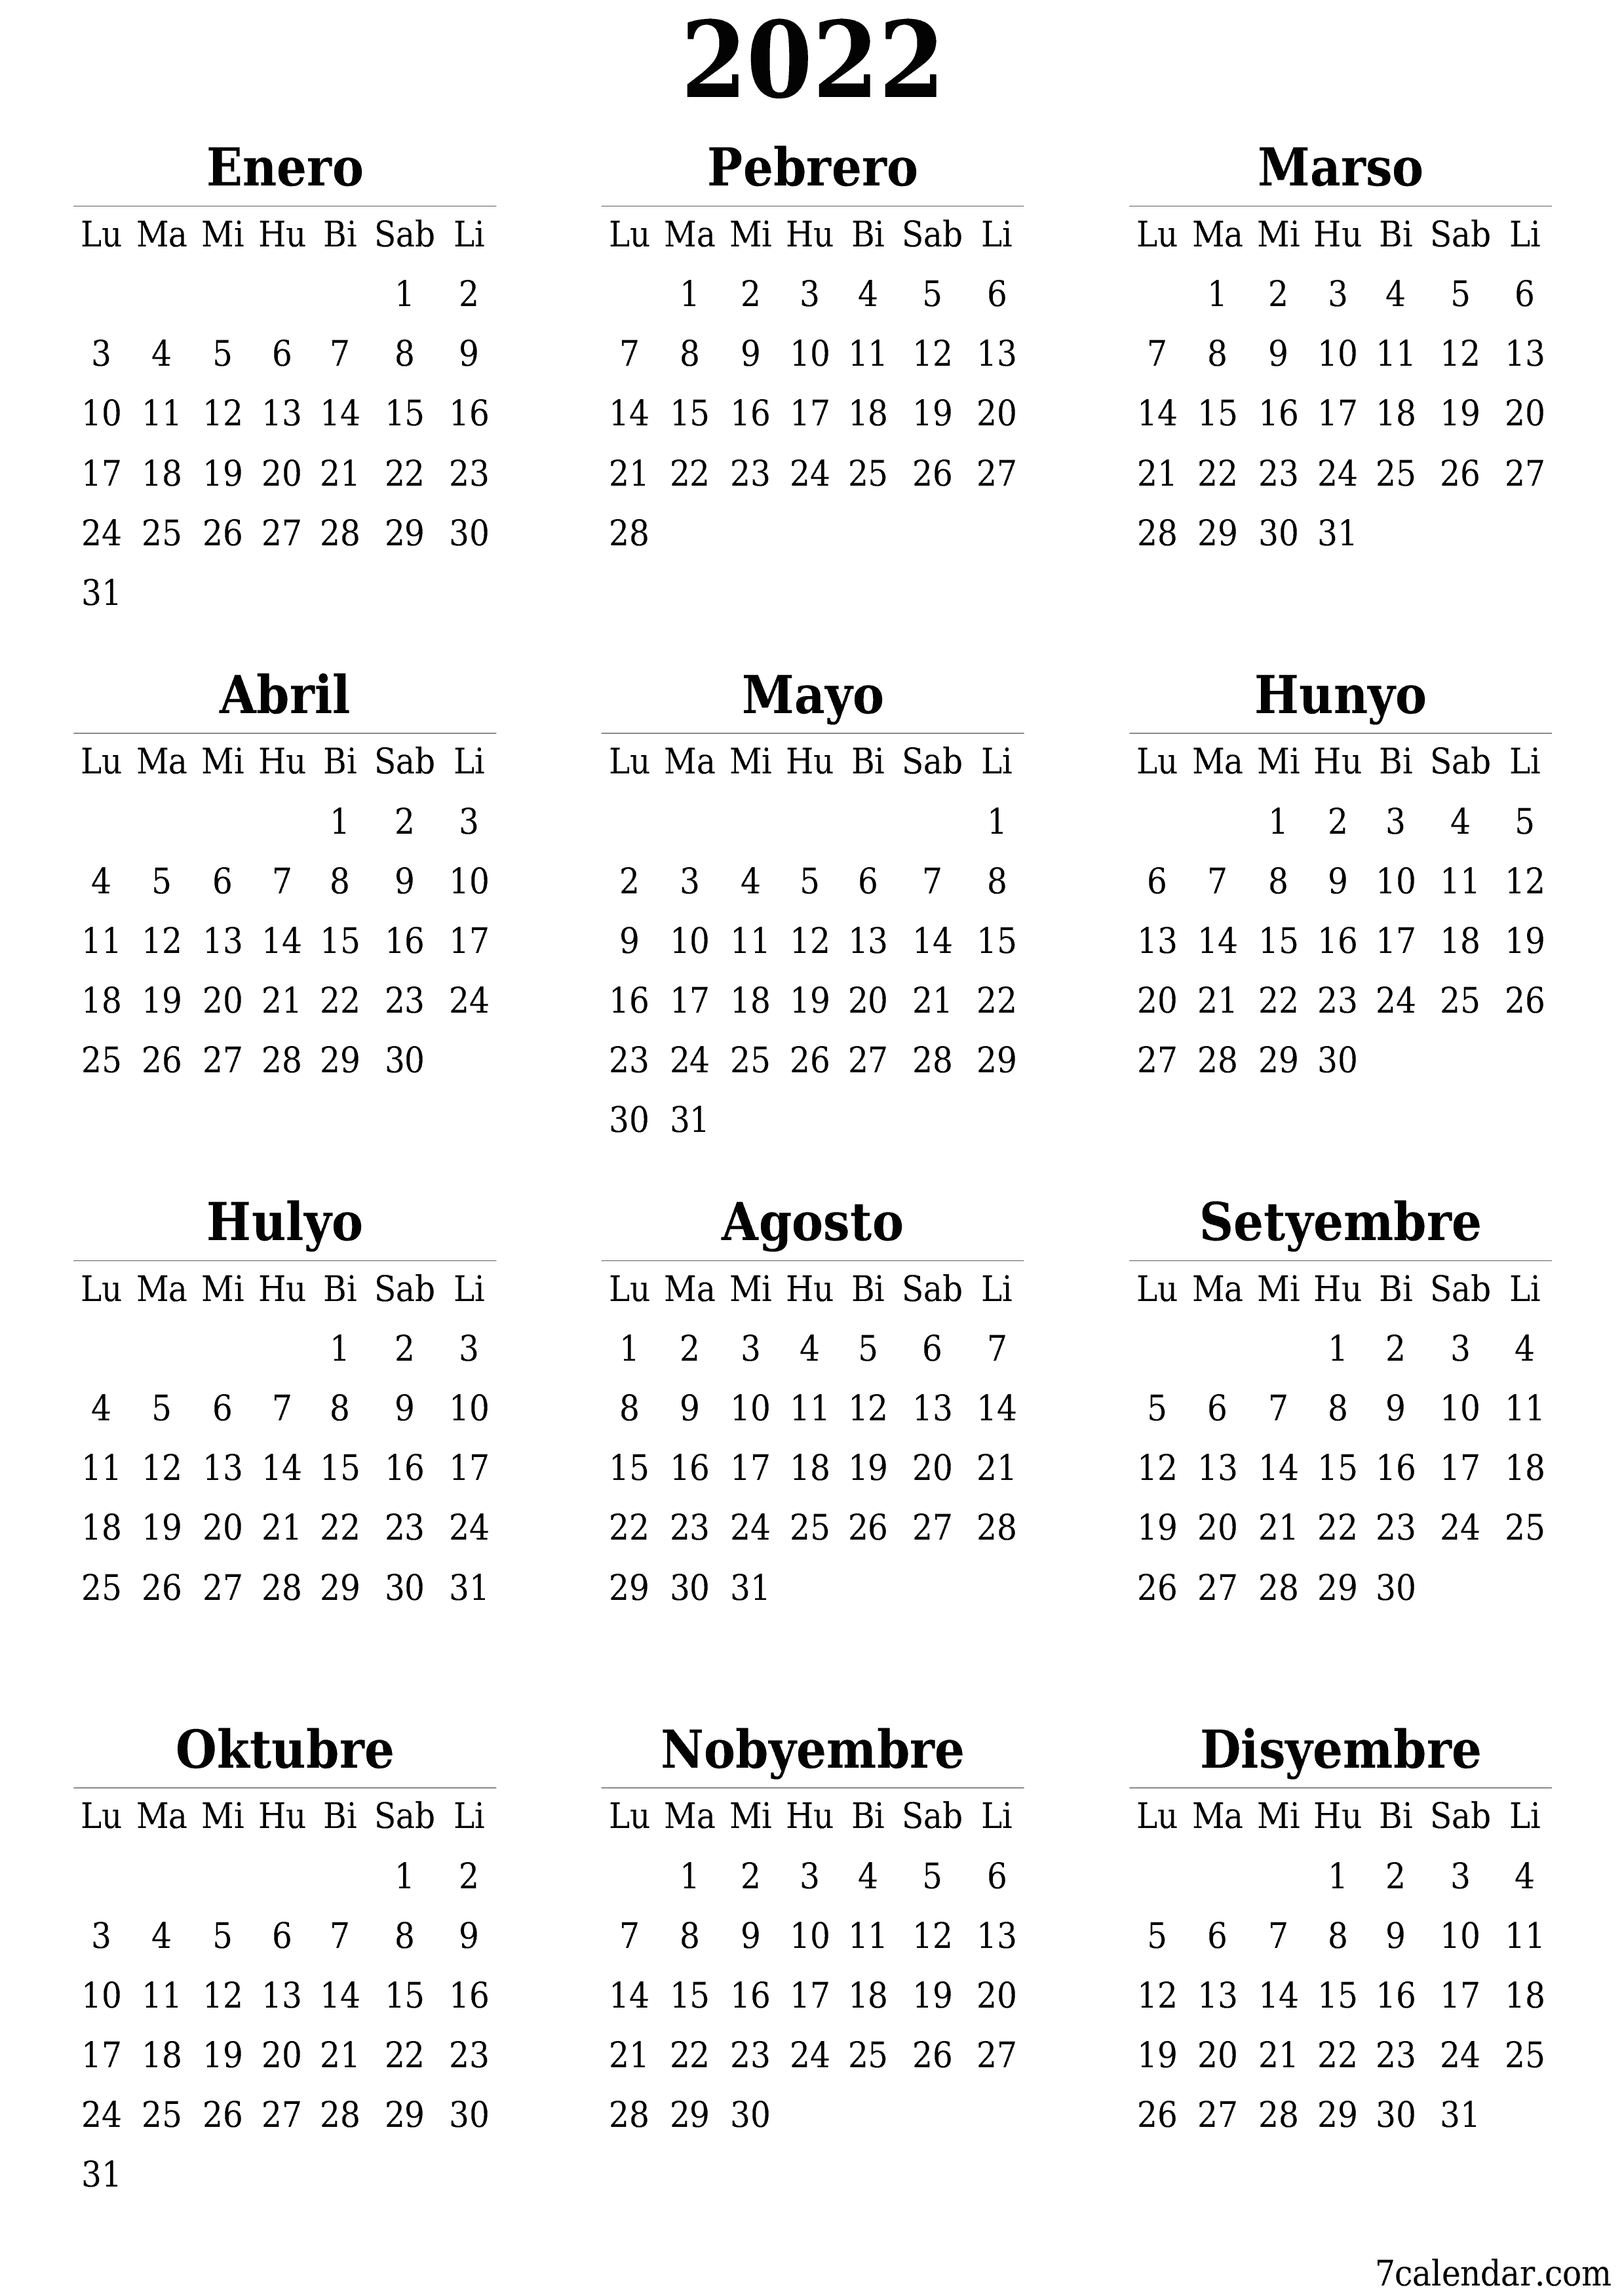 napi-print na sa dingding template ng libreng patayo Taunan kalendaryo Setyembre (Set) 2022